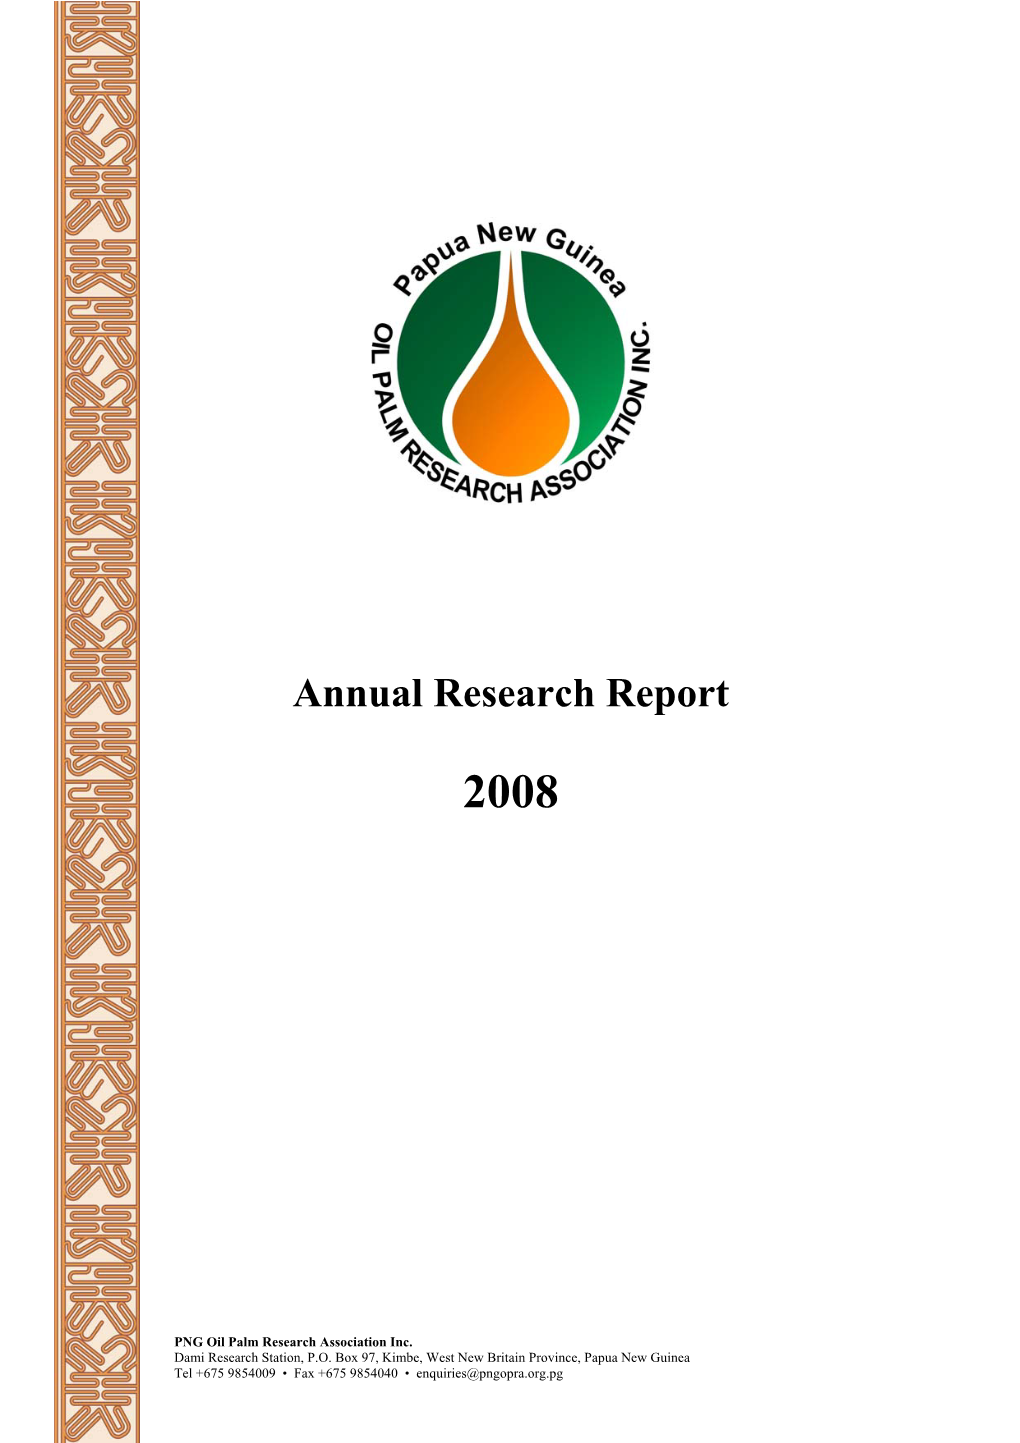 PNGOPRA Annual Research Report 2008